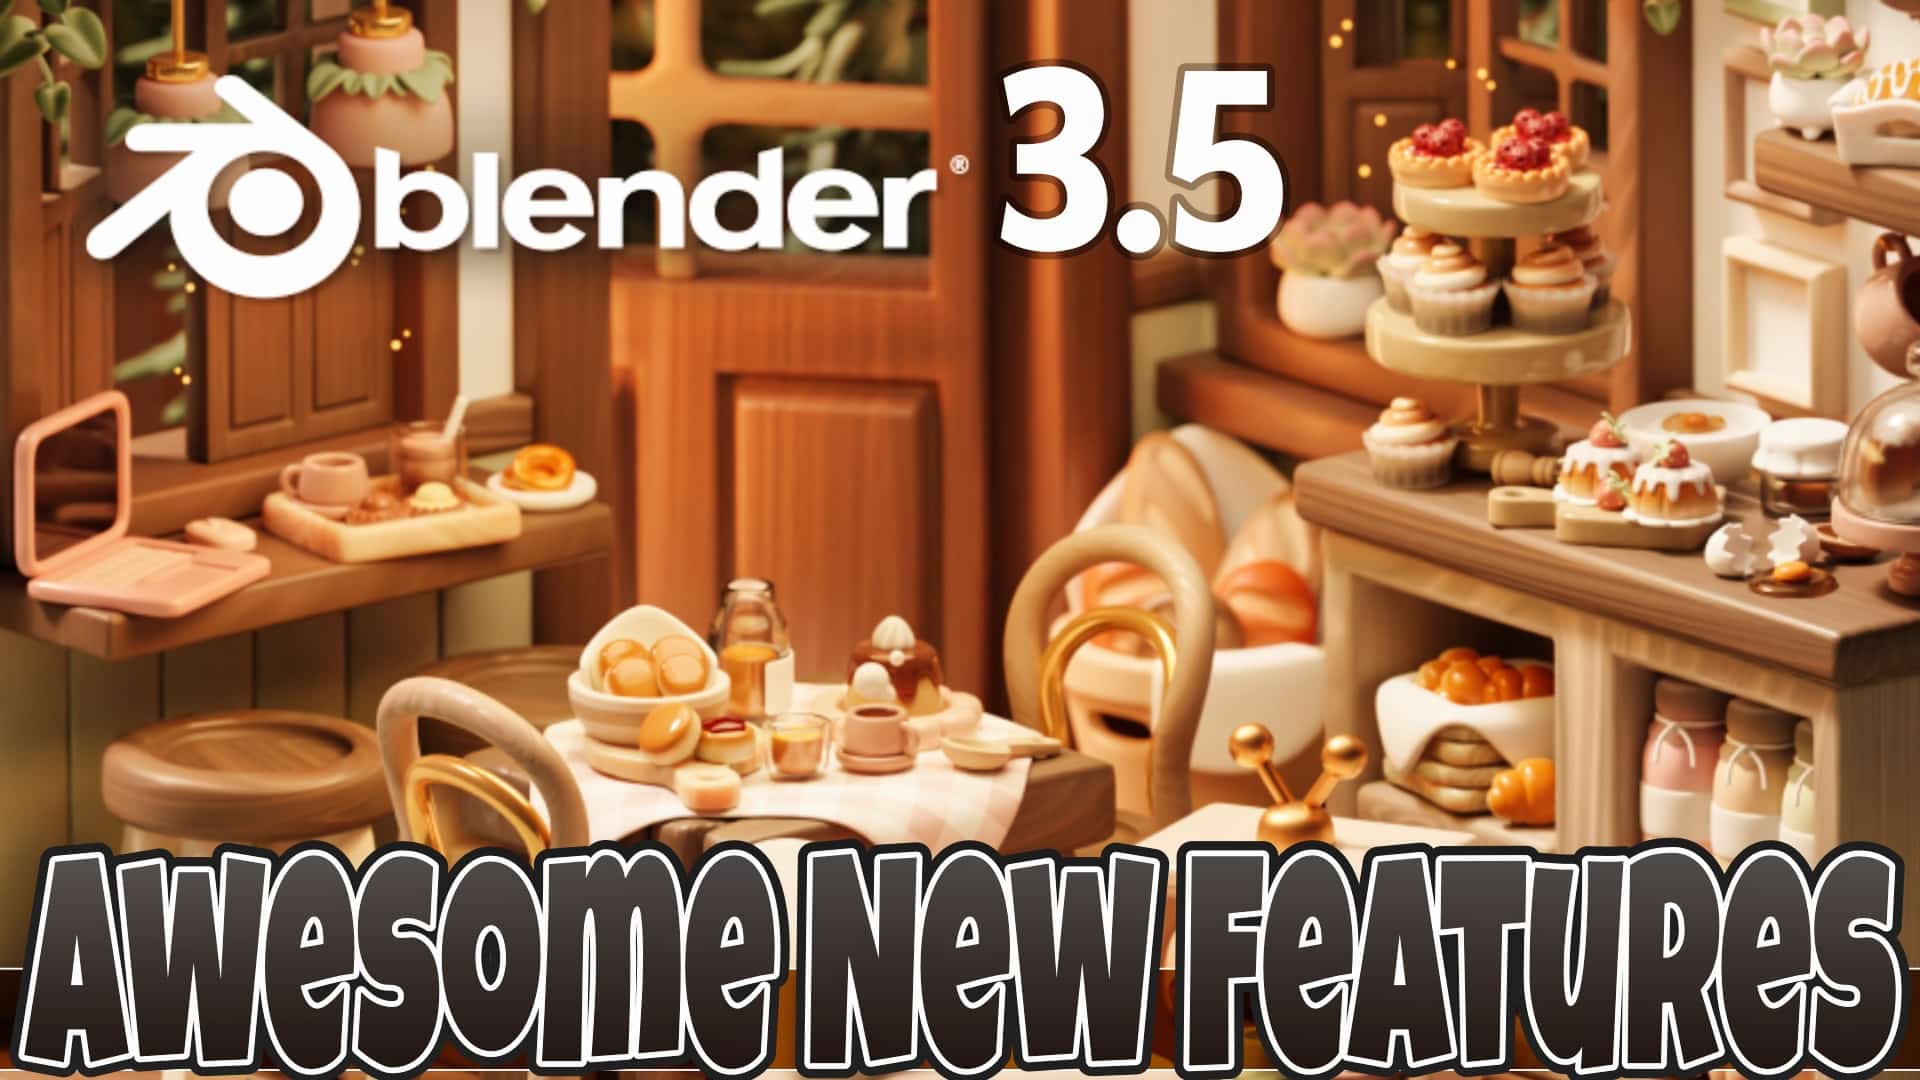 Blender 3.5 Released